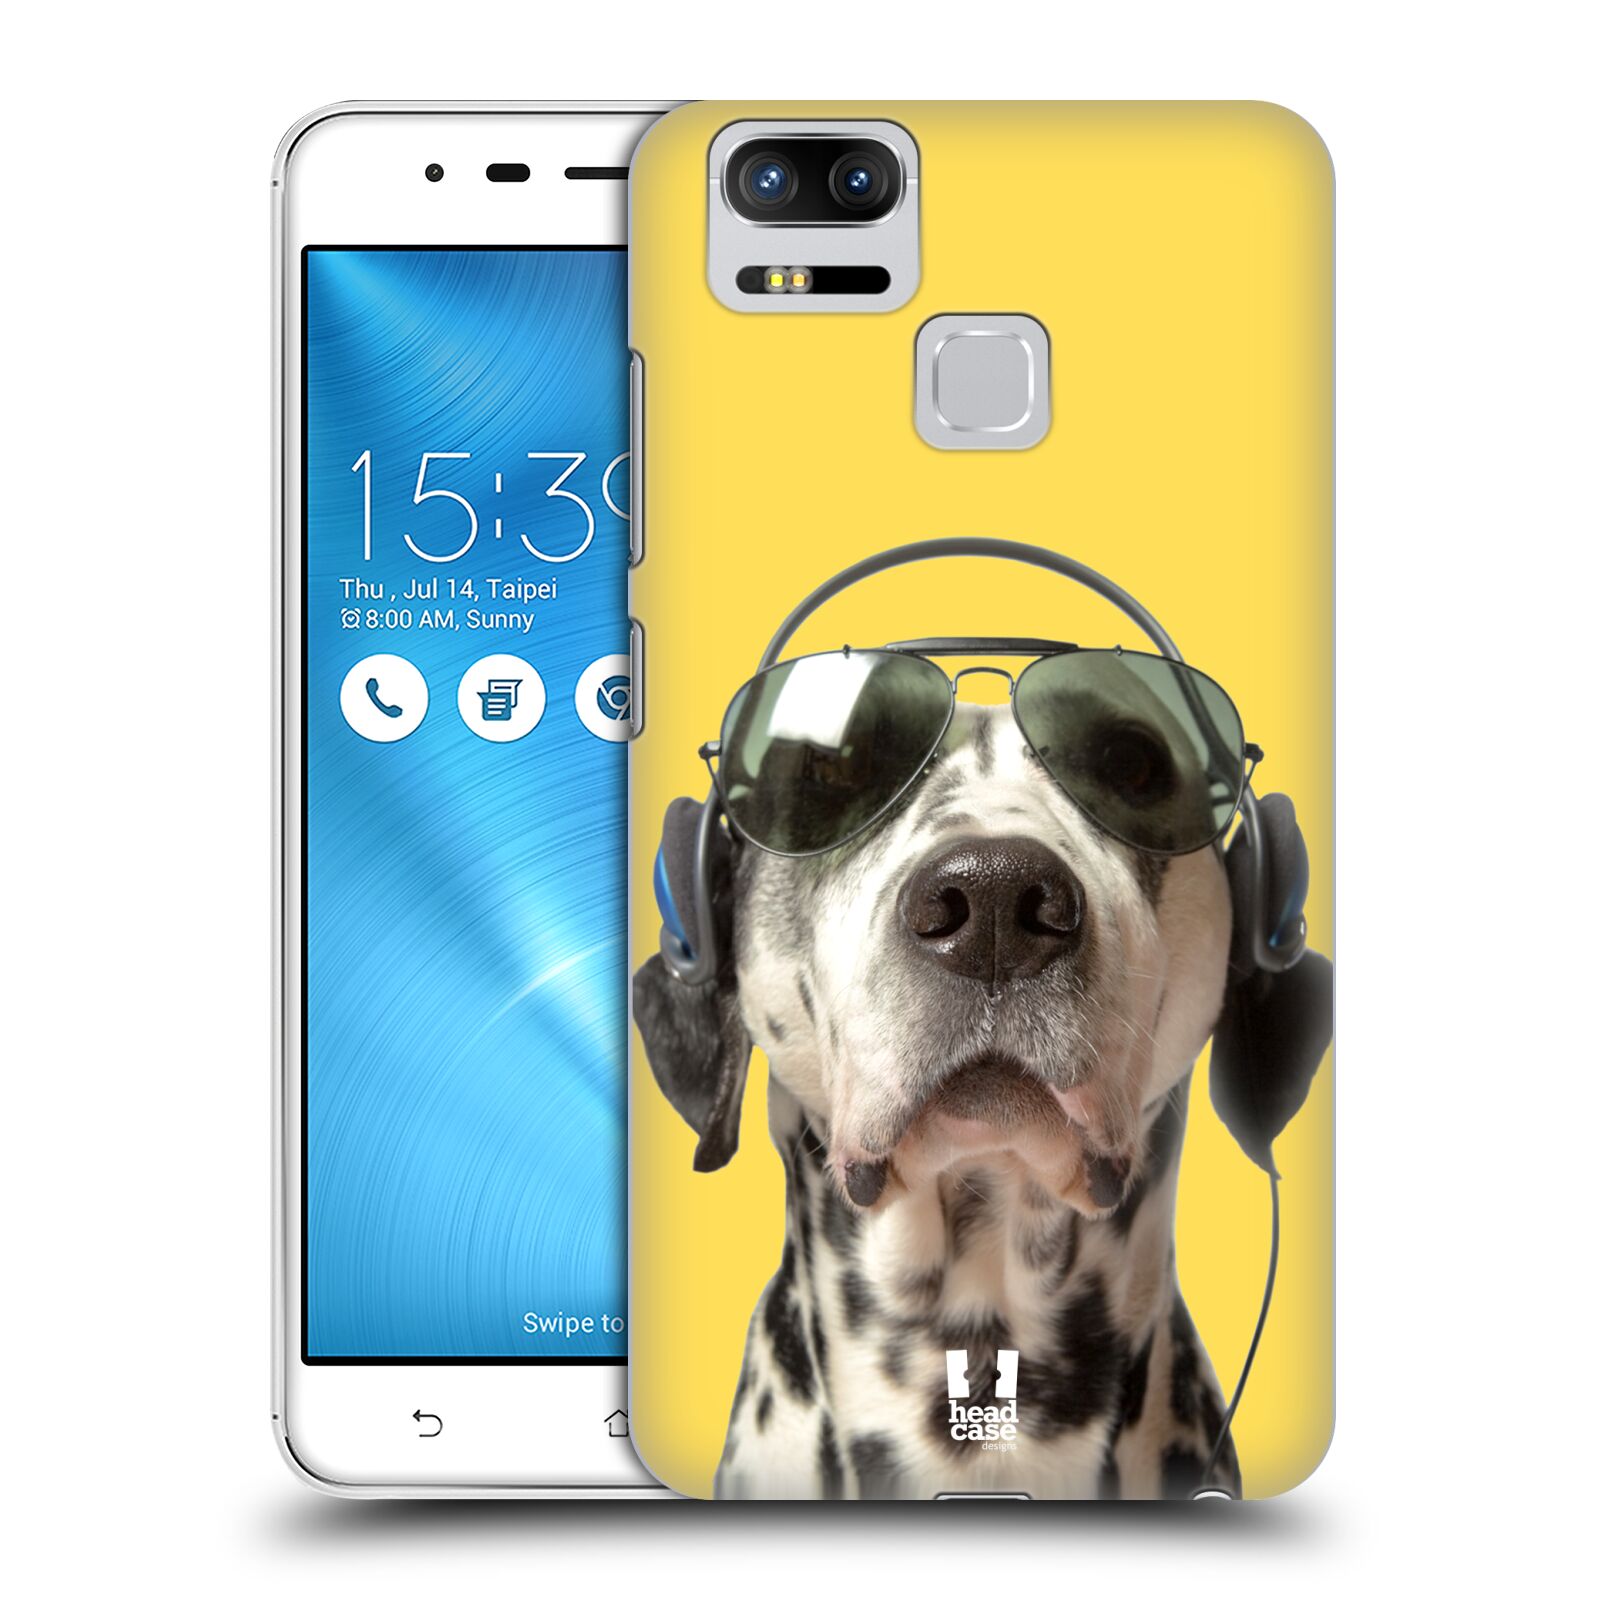 HEAD CASE plastový obal na mobil Asus Zenfone 3 Zoom ZE553KL vzor Legrační zvířátka dalmatin se sluchátky žlutá